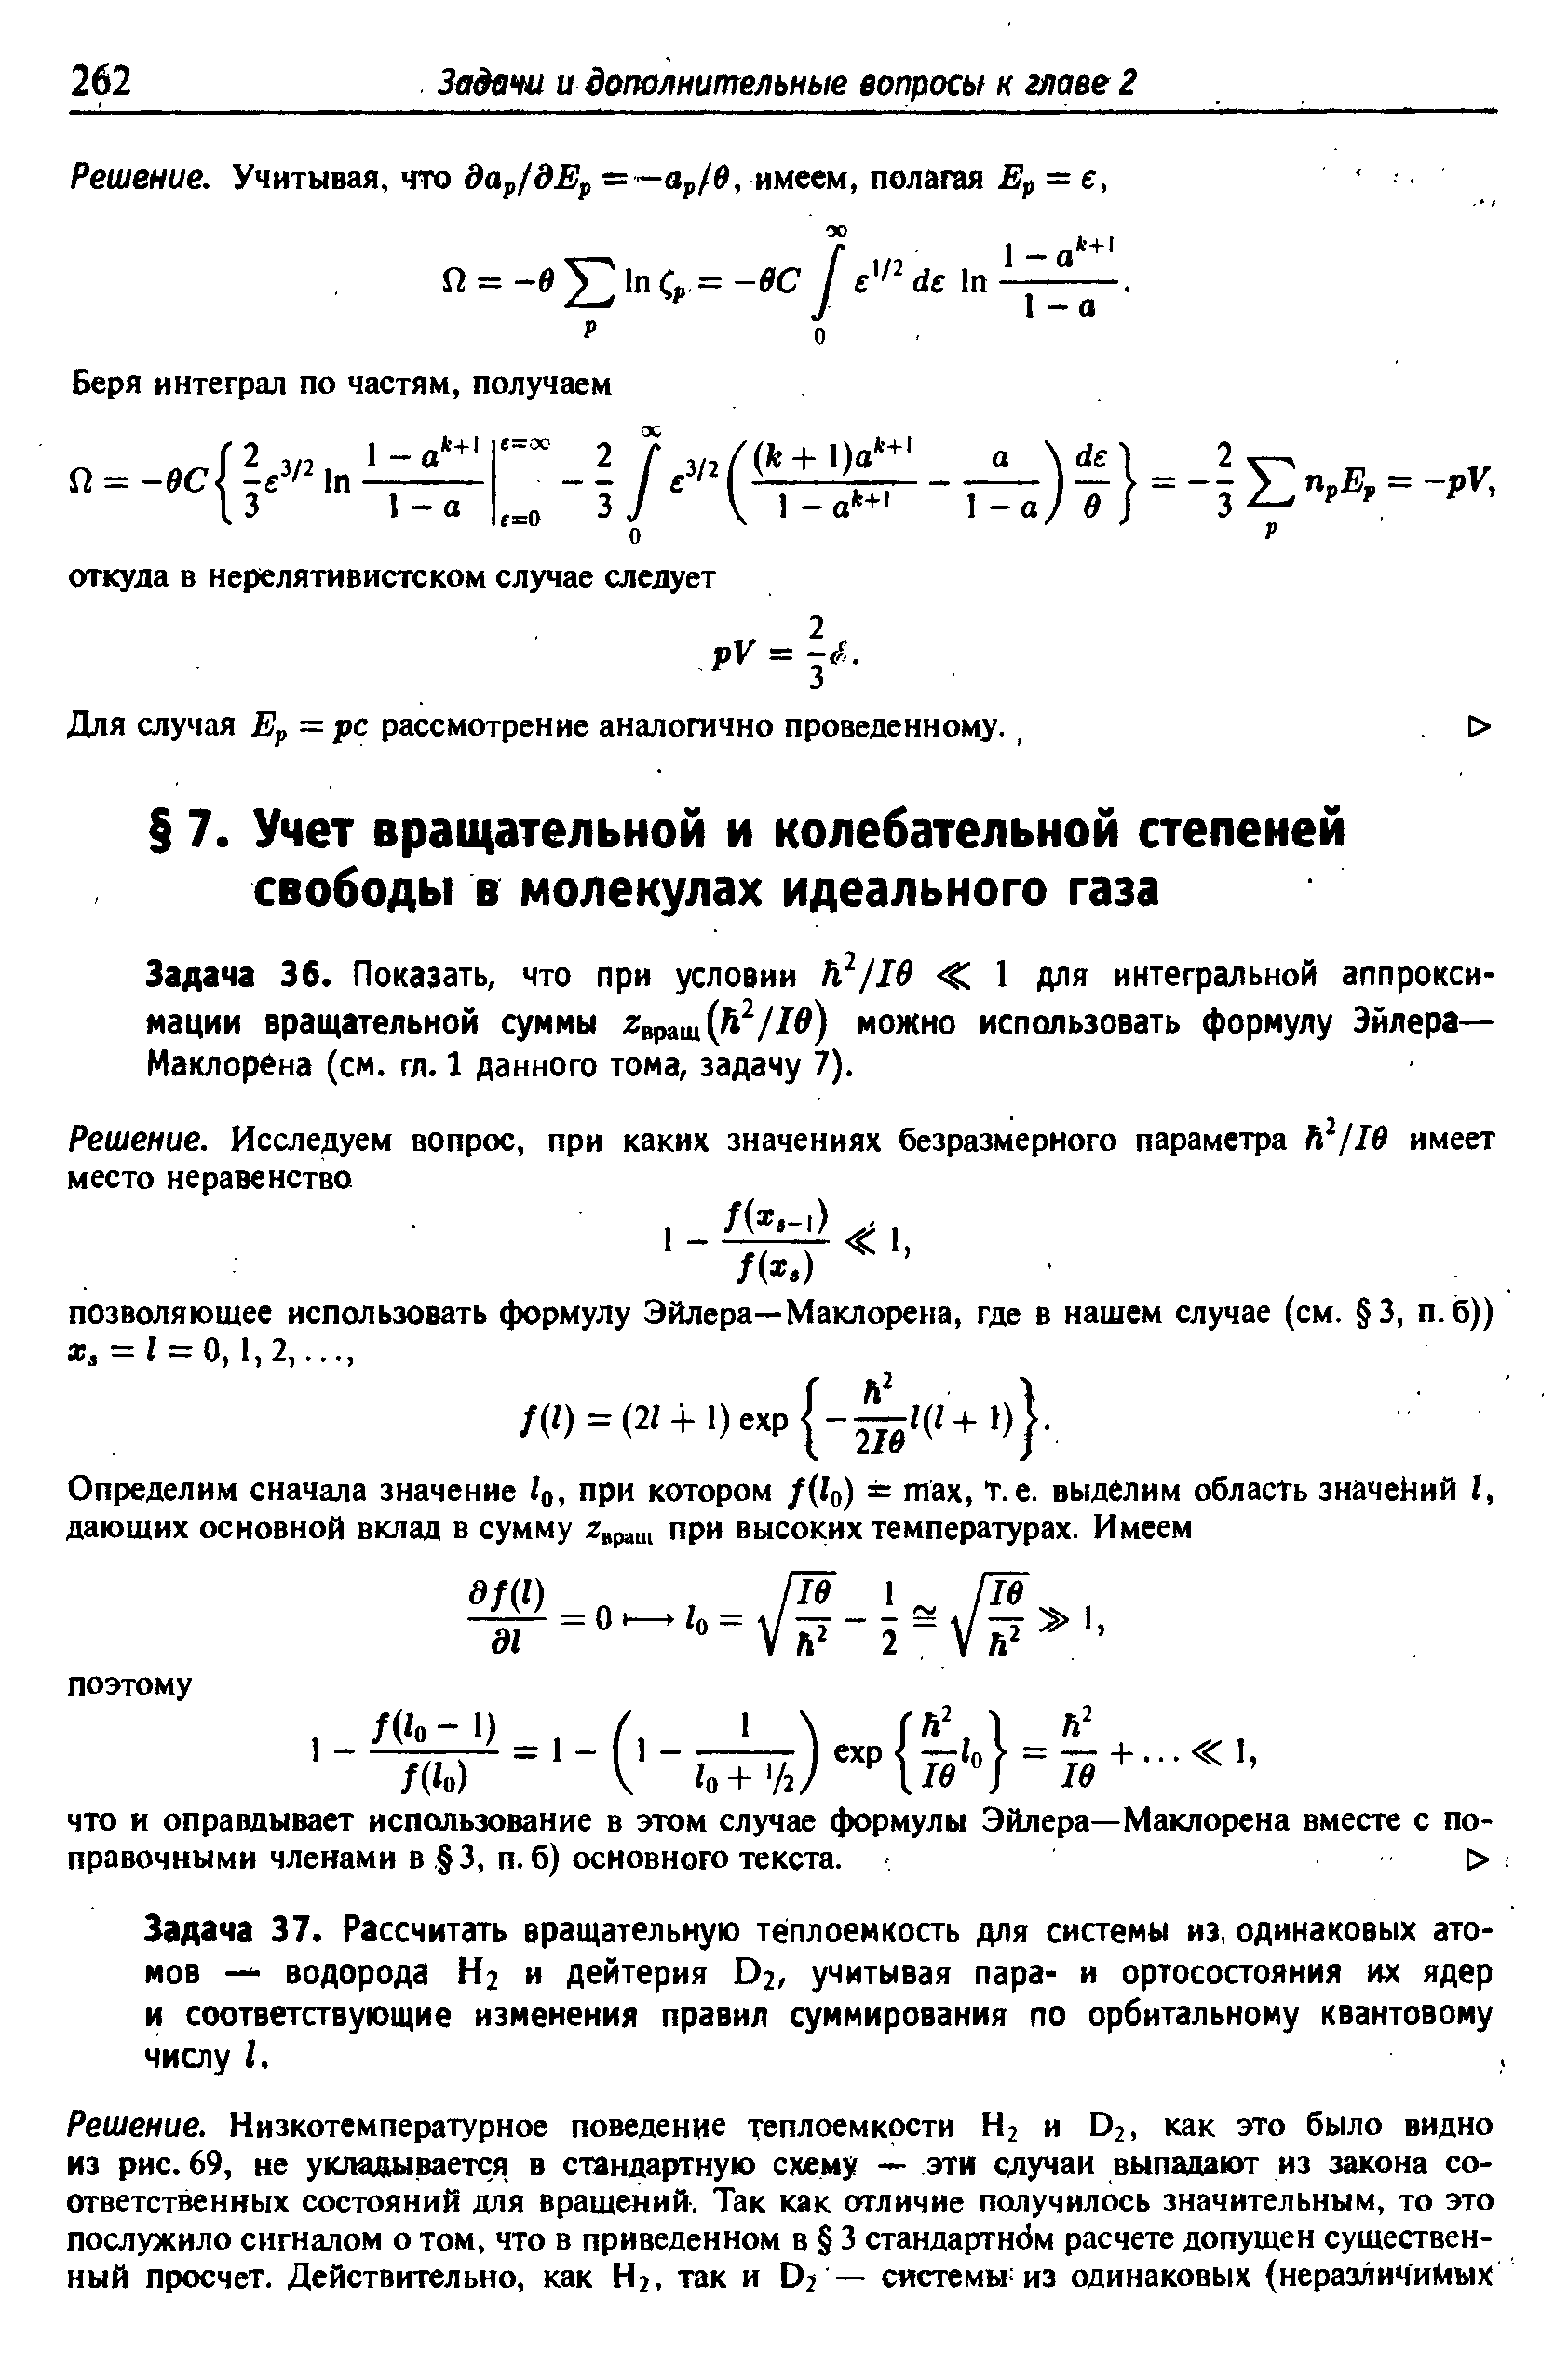 Задача 36. Показать, что при условии Ь /1в 1 для интегральной аппроксимации вращательной суммы можно использовать формулу Эйлера— Маклорена (см. гл. 1 данного тома, задачу 7).
